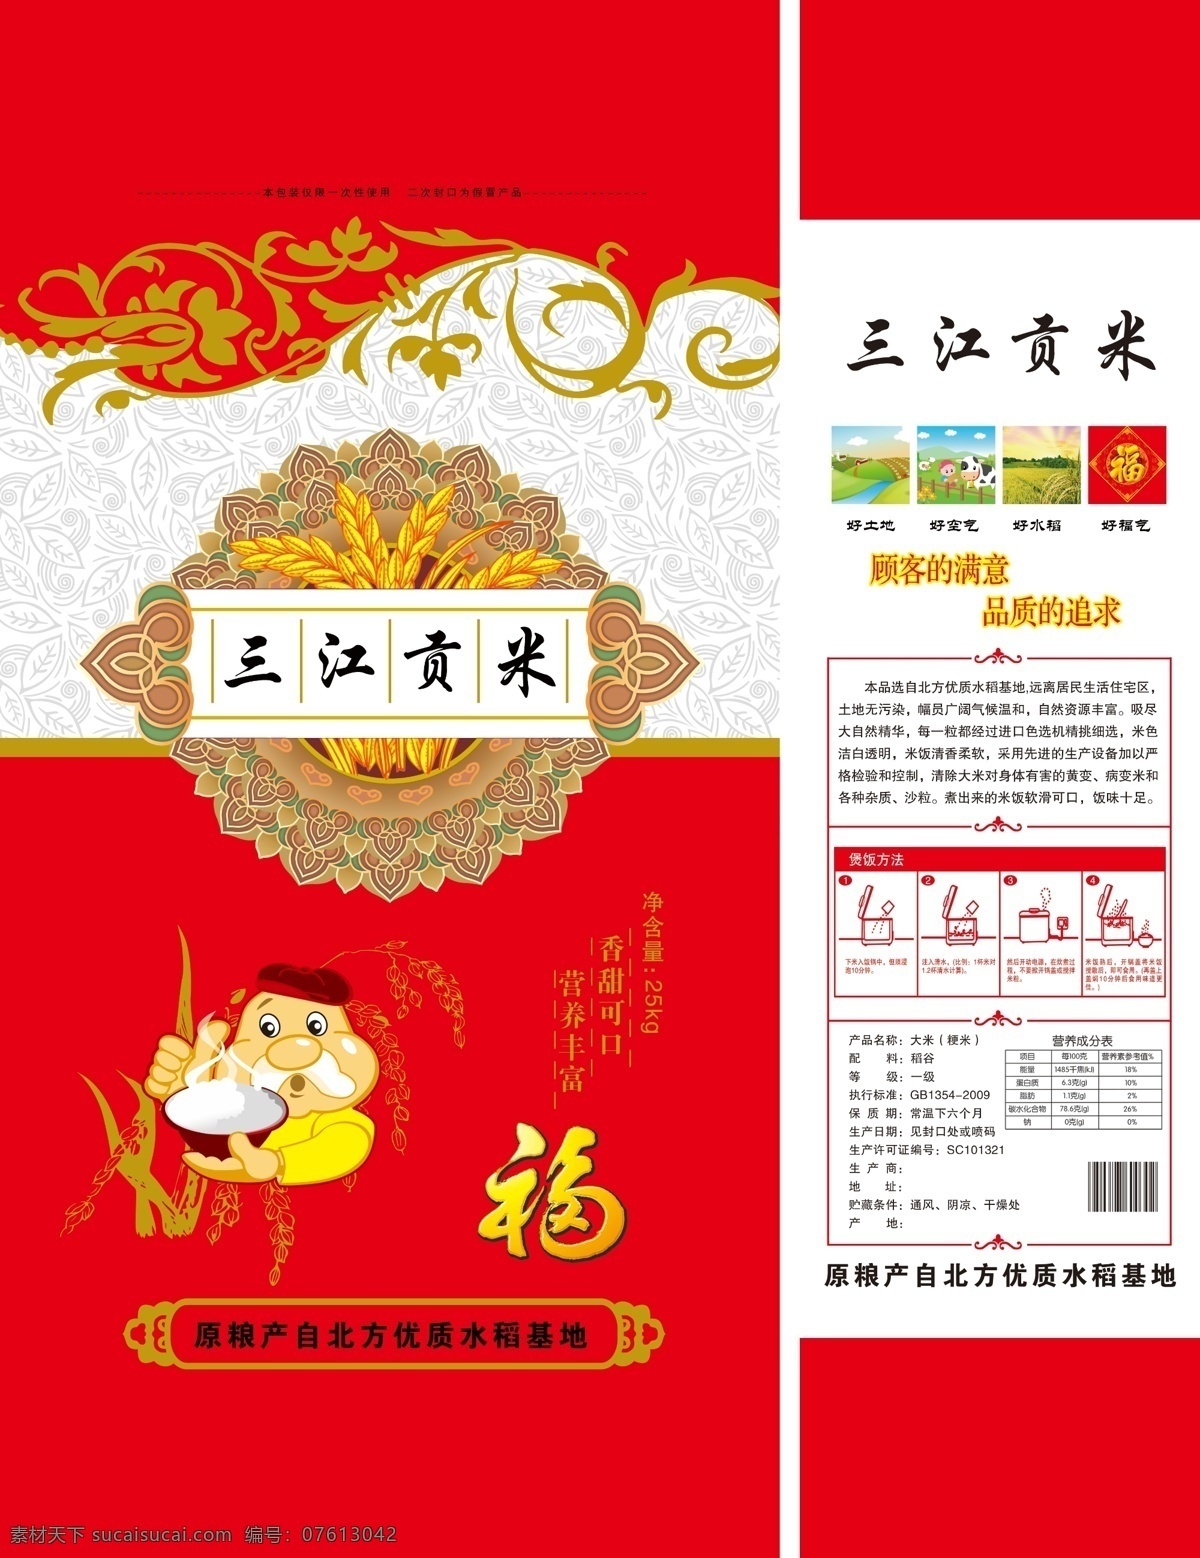 大米 包装 平面图 大米包装 生态米 珍珠米 米 三江贡米 卡通 卡通老头 福 水稻 底纹 边框 包装设计